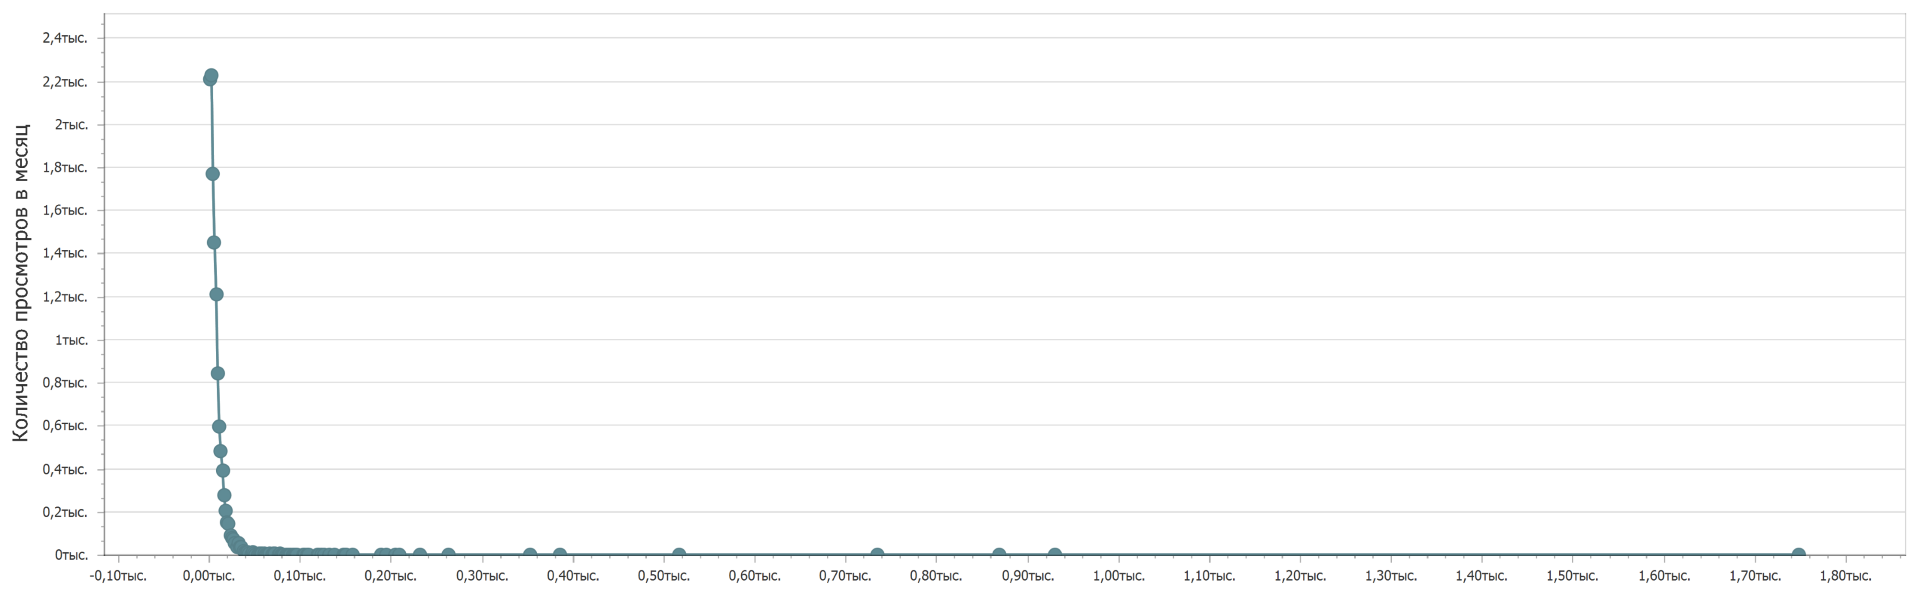 Количество просмотров наборов открытых данных с портала data.gov.ru в месяц